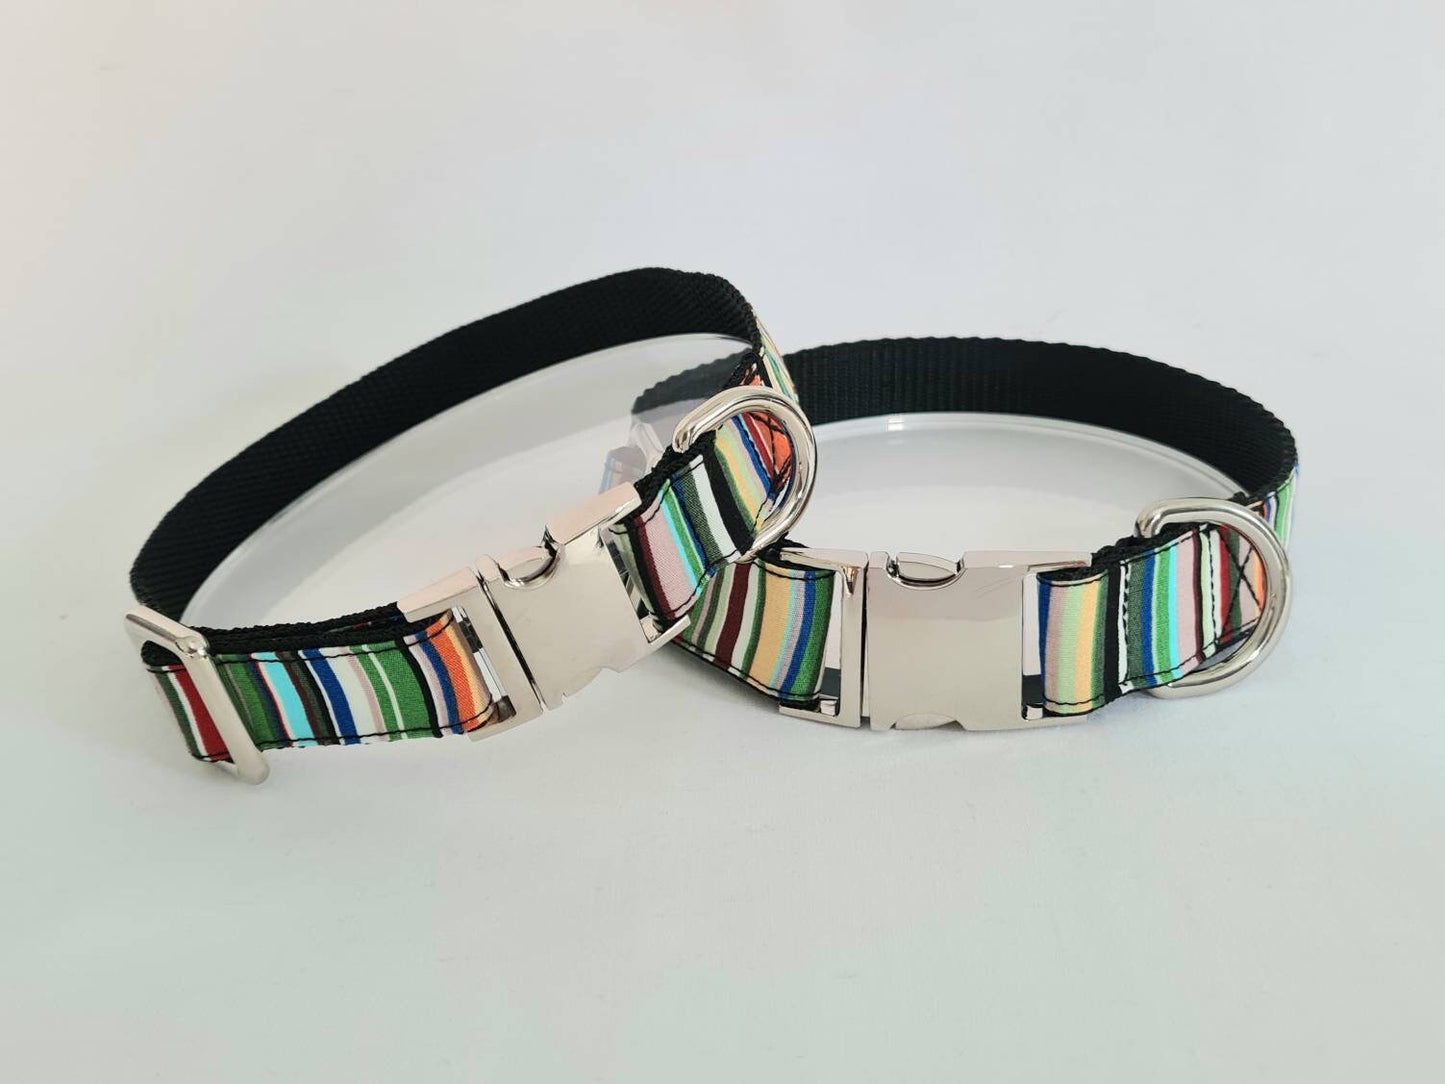 Green stripe dog collar